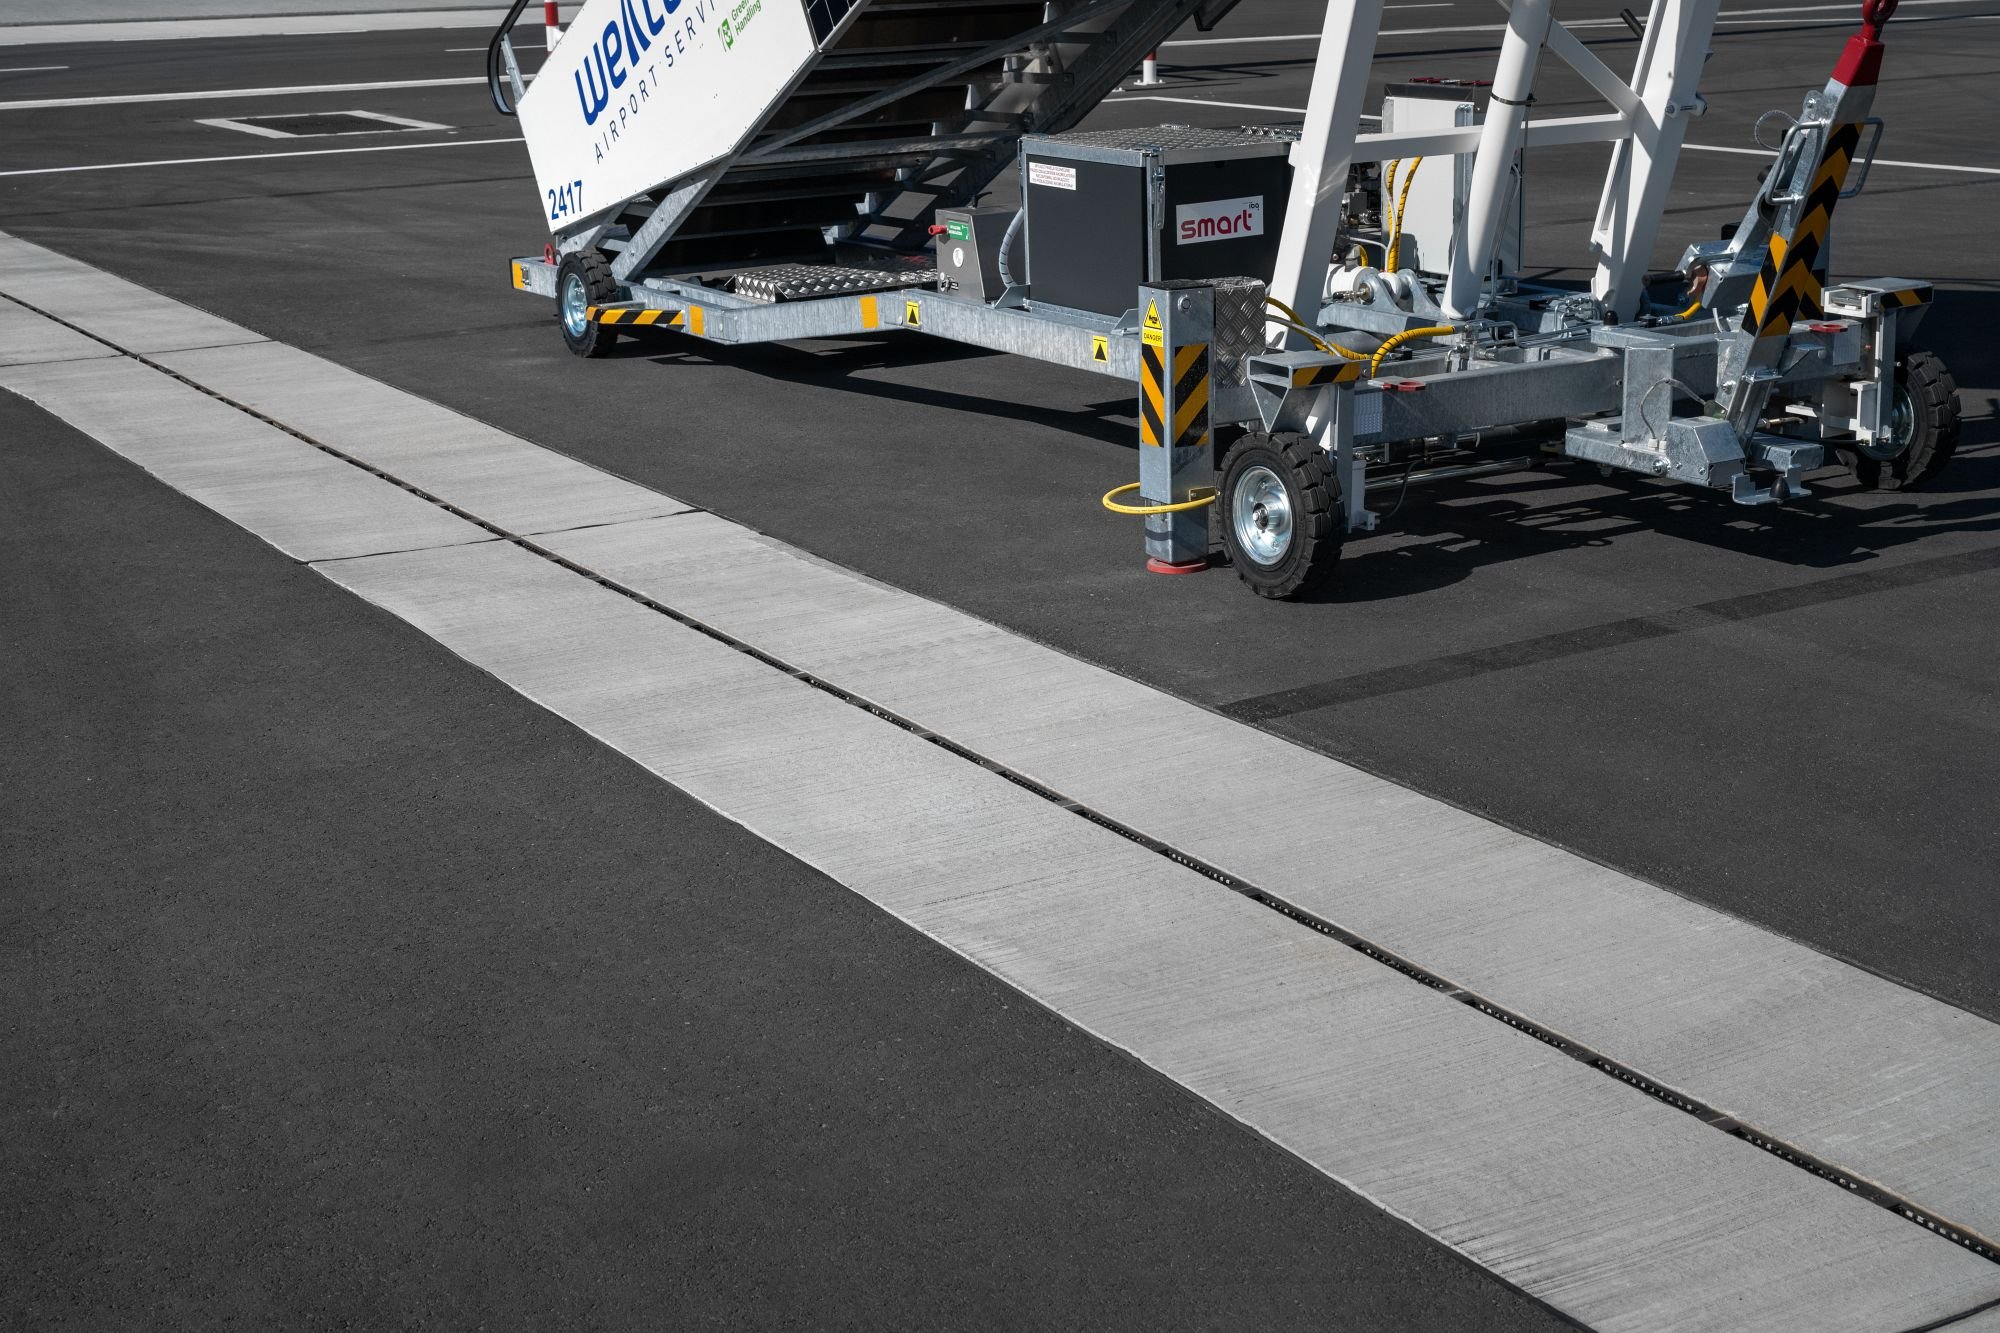 odwodnienie liniowe zabudowane w płycie lotniska na przy schodach do samolotu, lotnisko radom